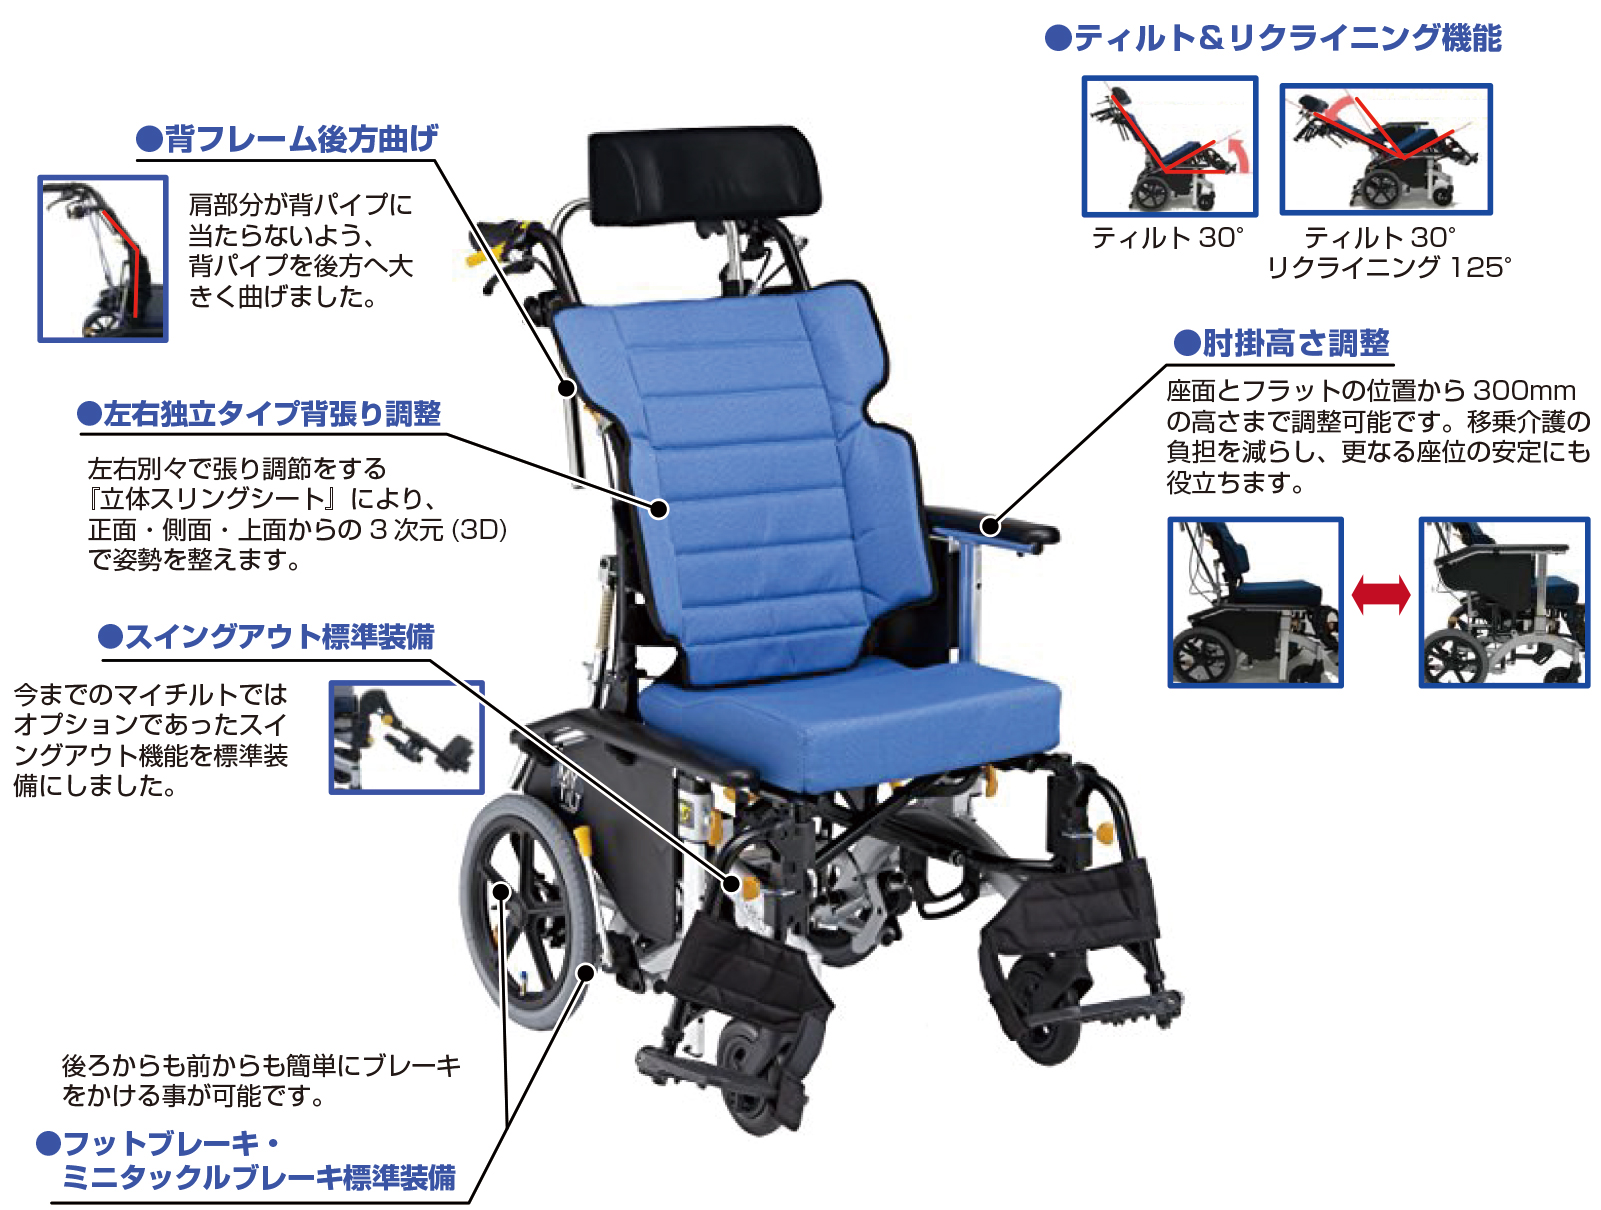 超コンパクト・チルト&リクライニング車椅子の特徴